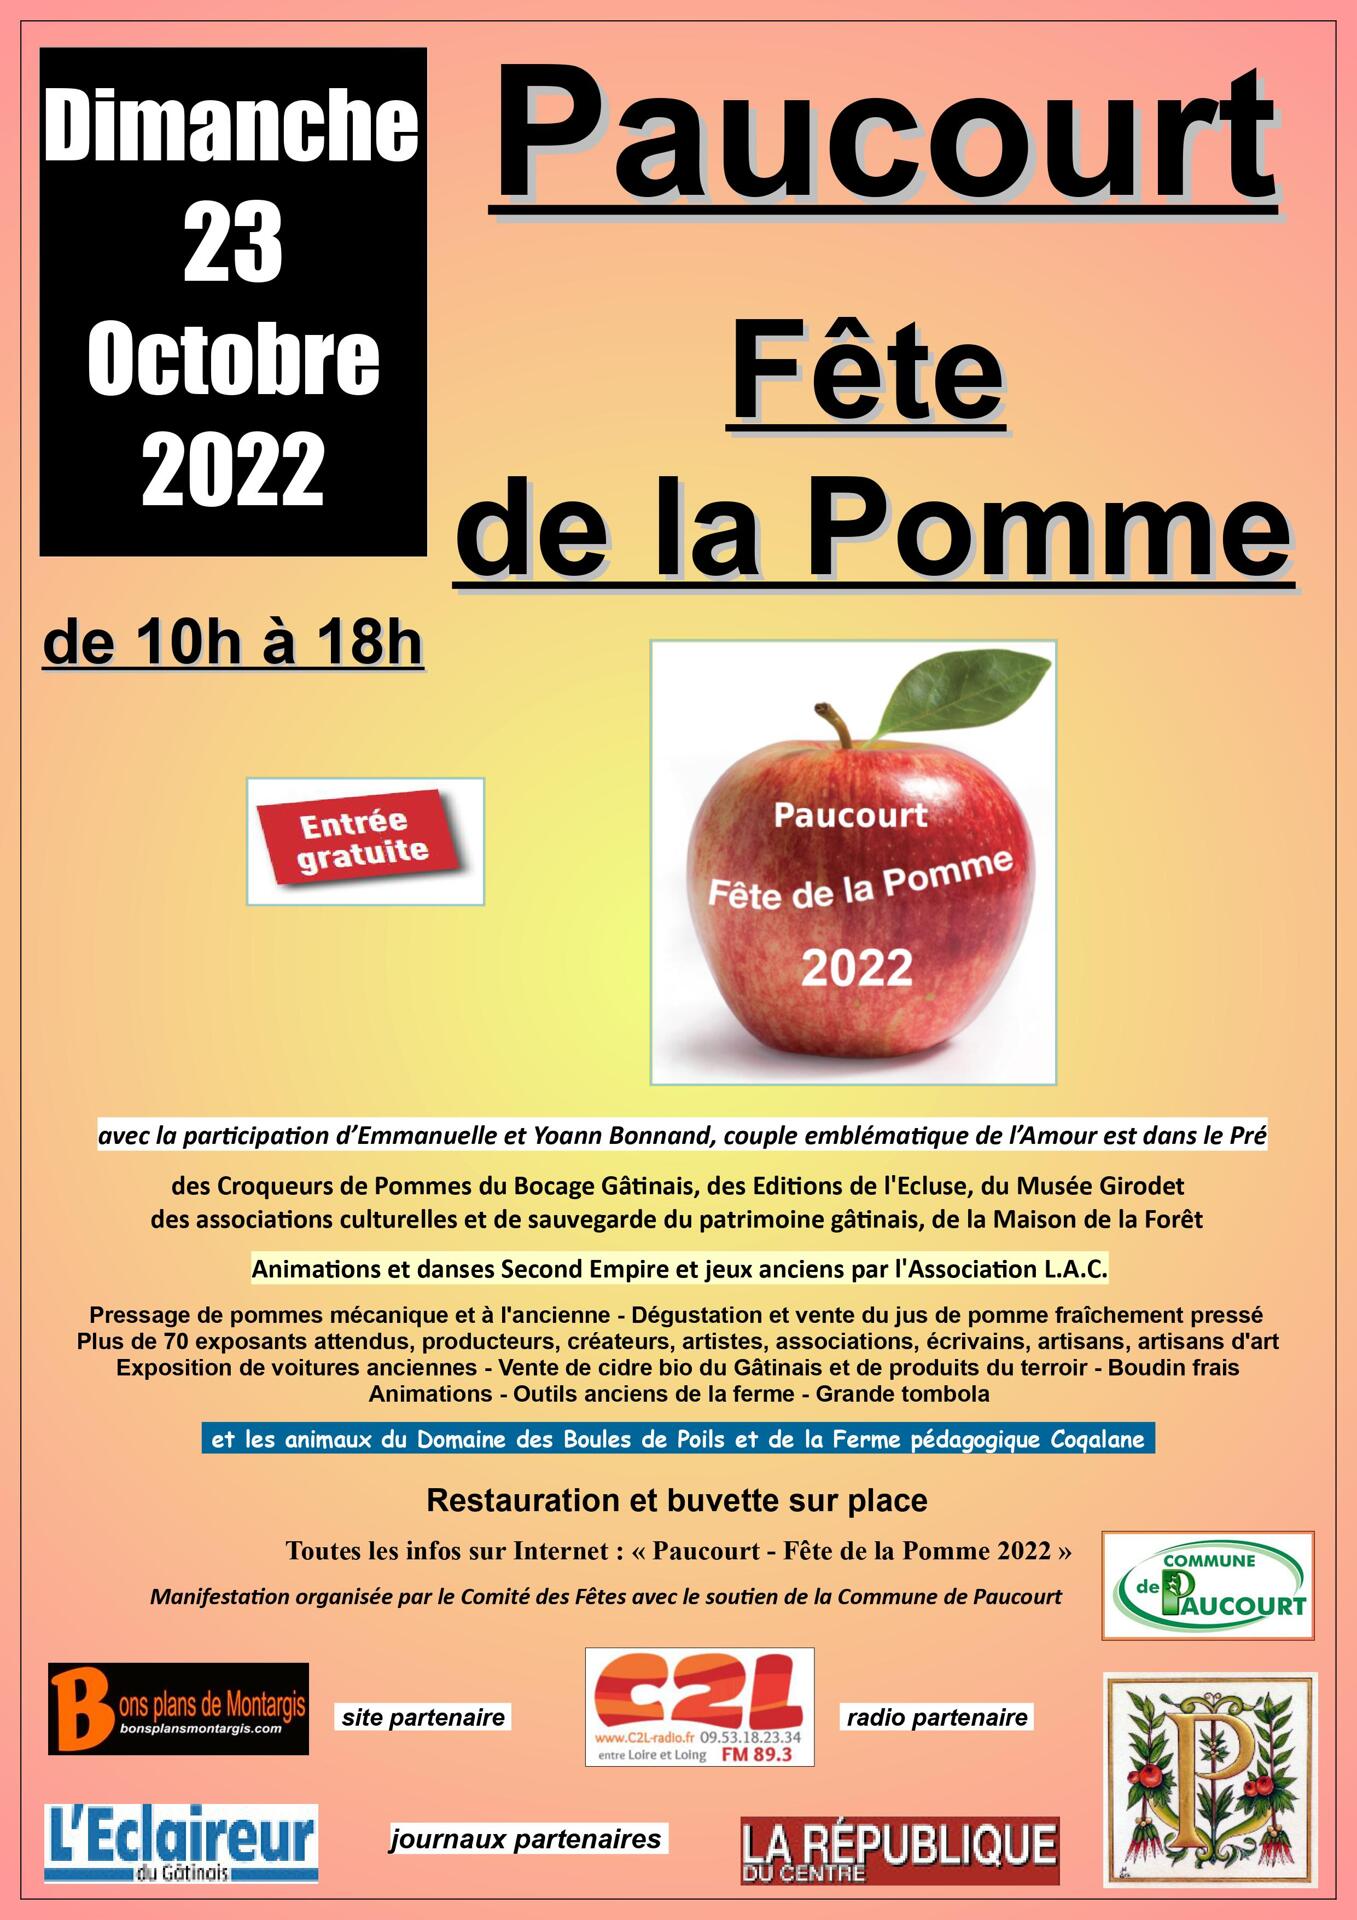 La 9ème Fête de la Pomme aura lieu le dimanche 23 Octobre 2022.
Ouverture au public de 10h à 18h.